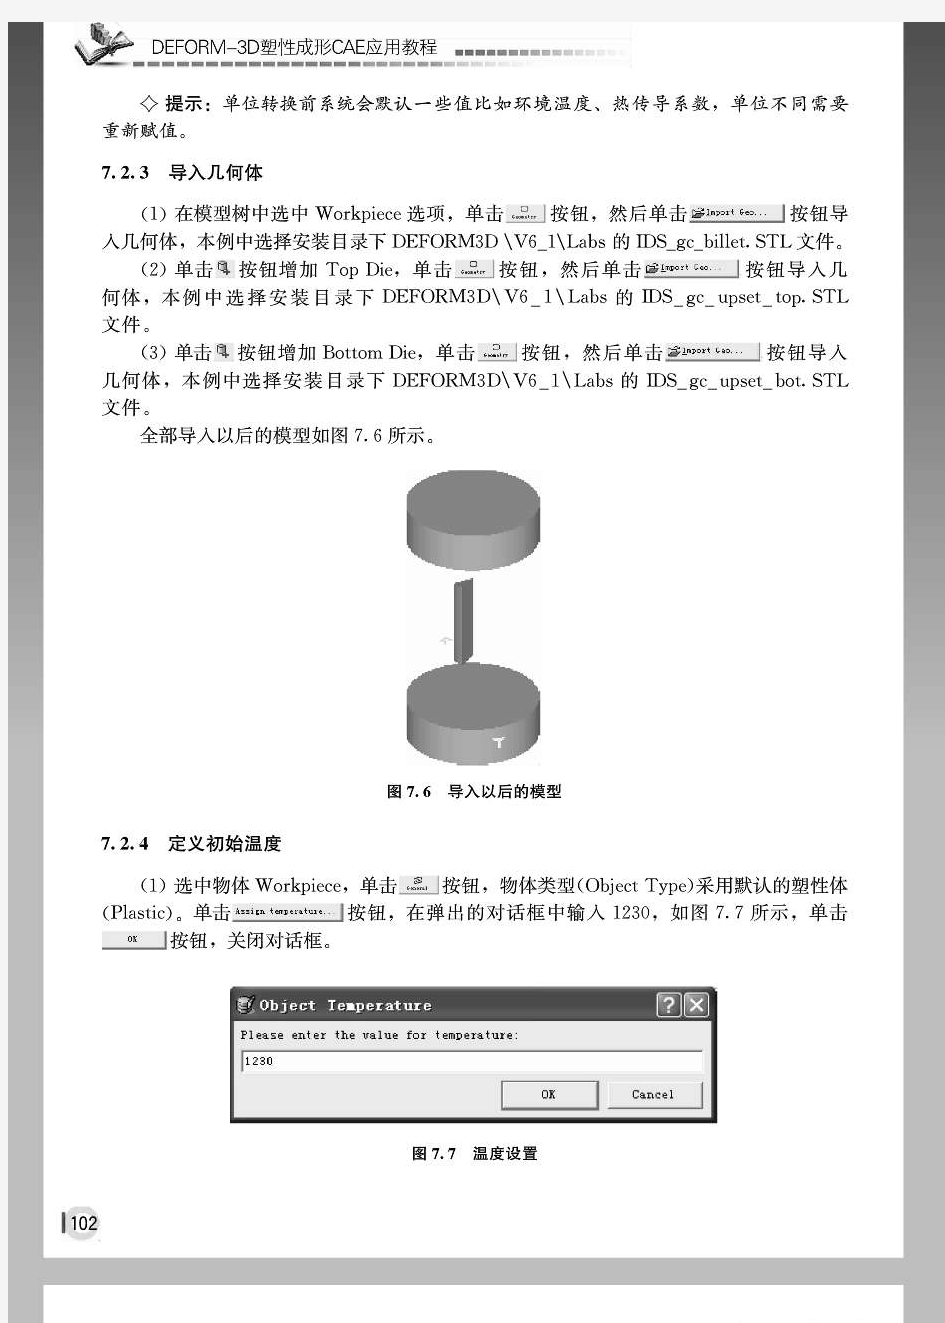 DEFORM-3D塑性成形CAE应用教程-胡建军 李小平101-160页